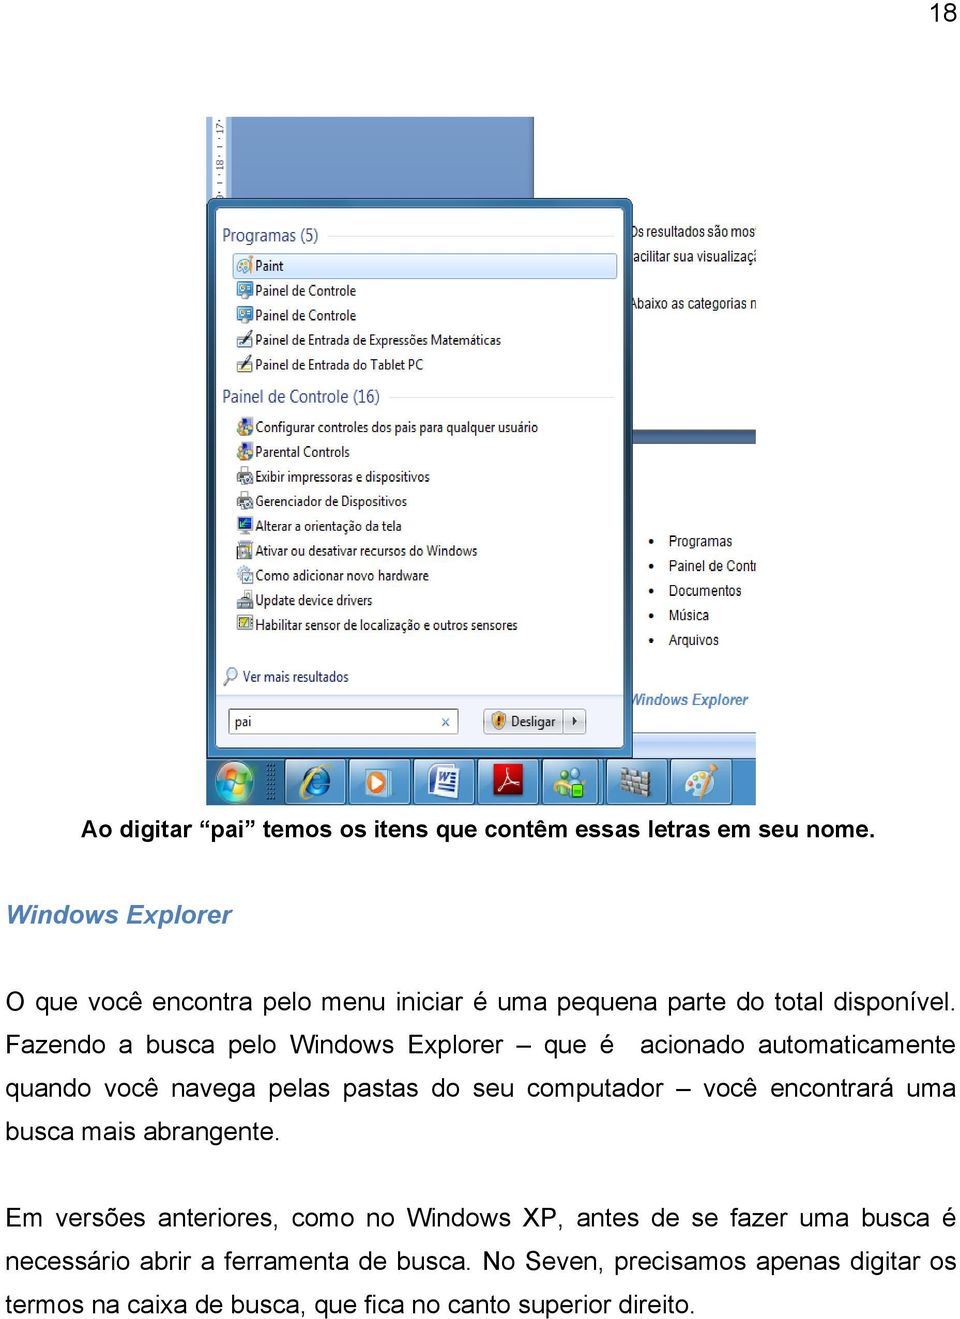 Fazendo a busca pelo Windows Explorer que é acionado automaticamente quando você navega pelas pastas do seu computador você encontrará